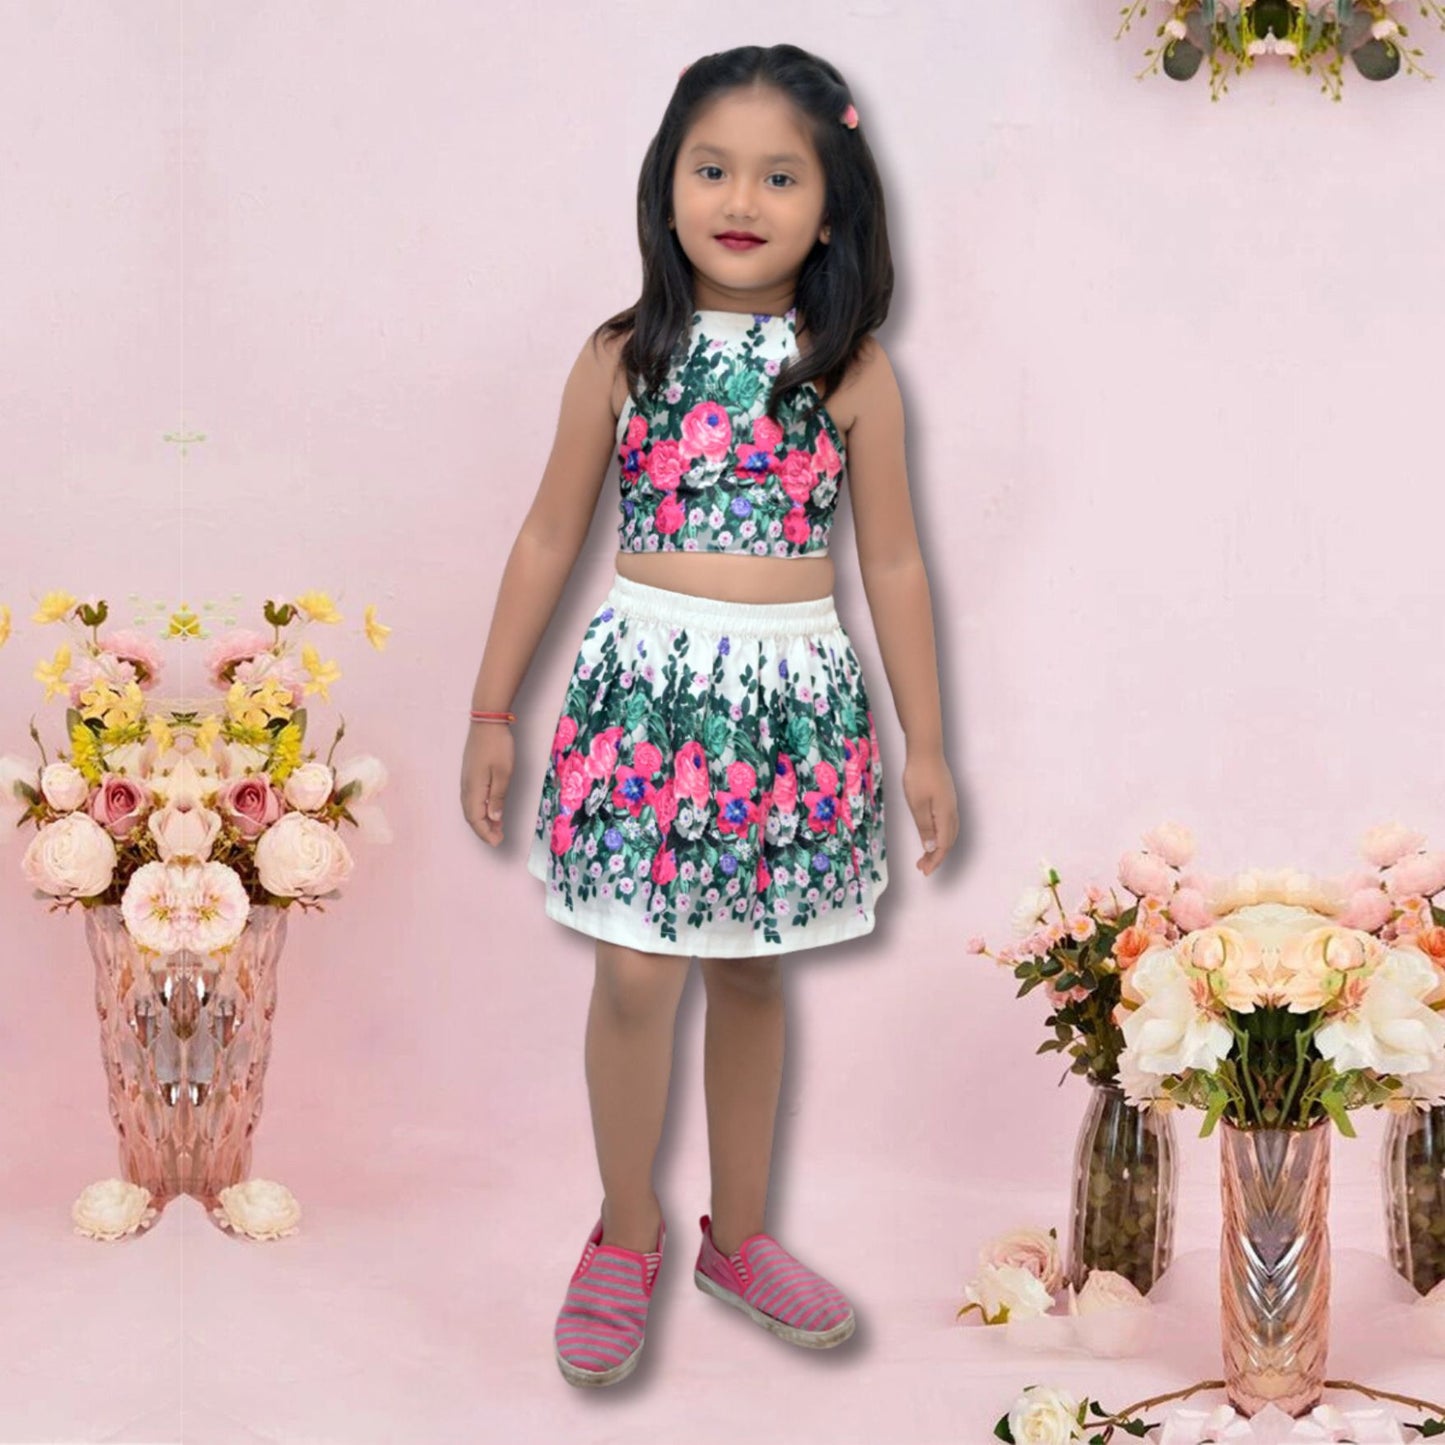 BabyGirl's Stylish Floral Designer Top & Shorts For Kids.